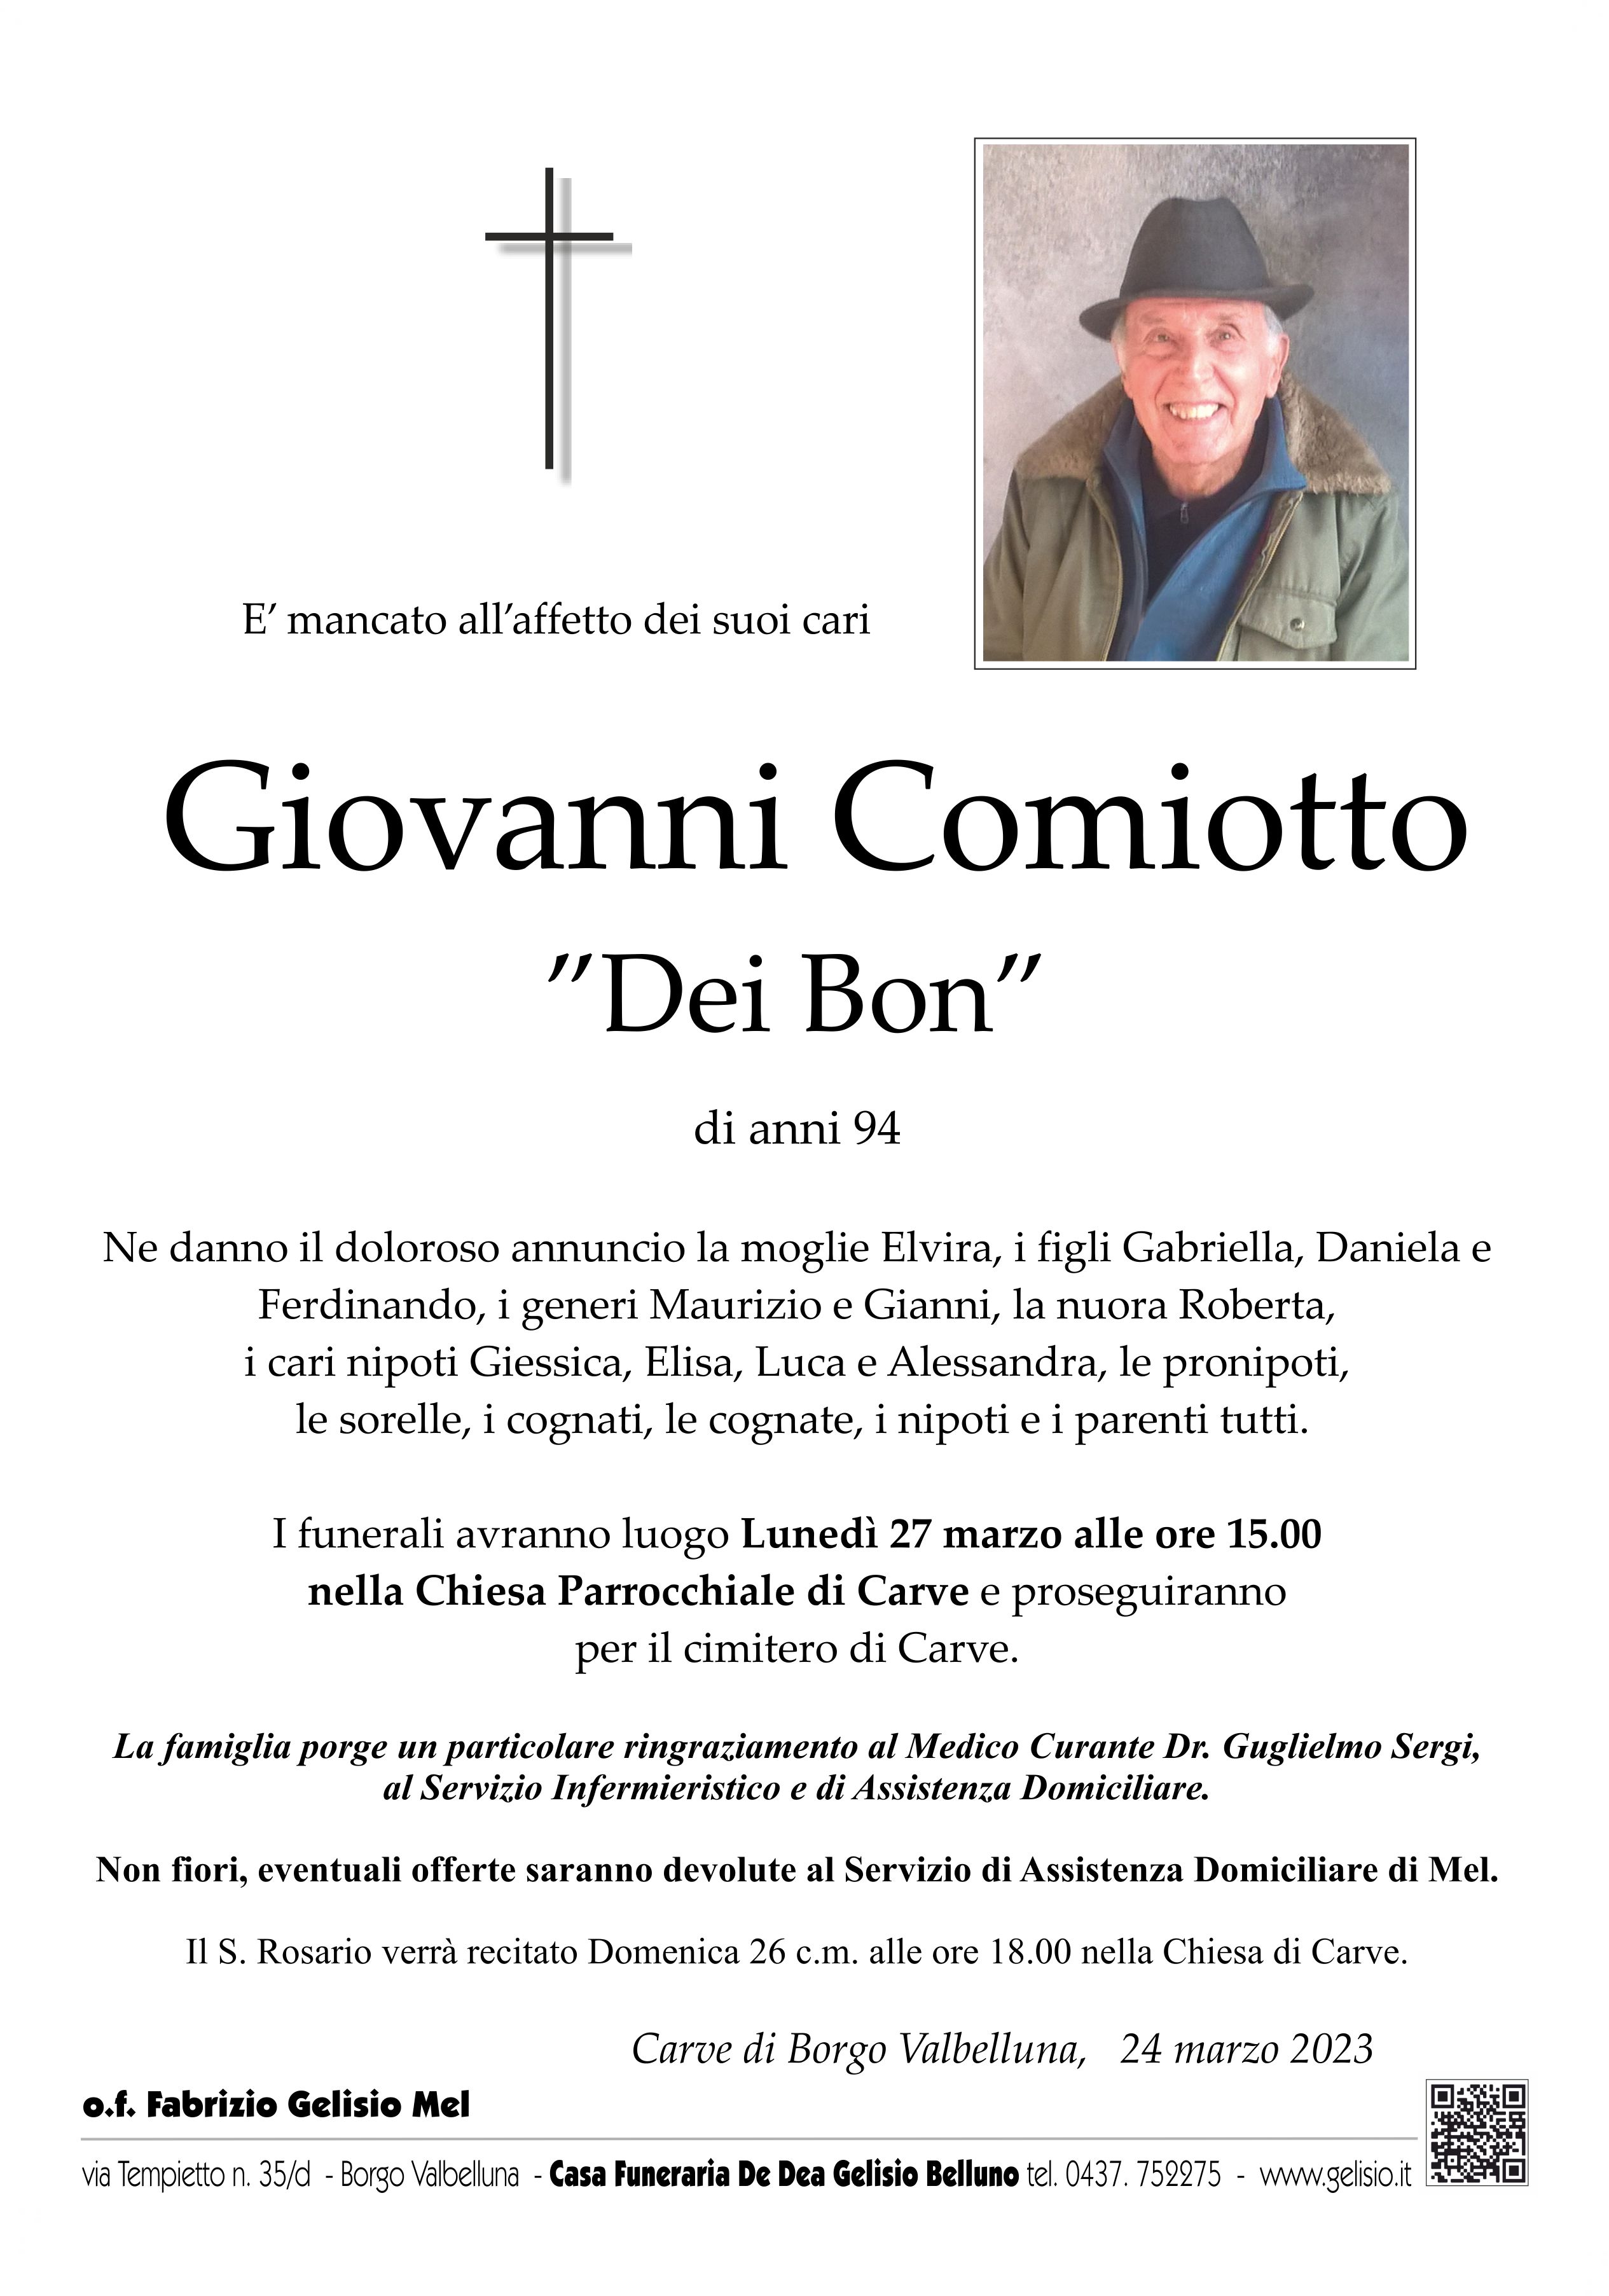 Comiotto Giovanni1